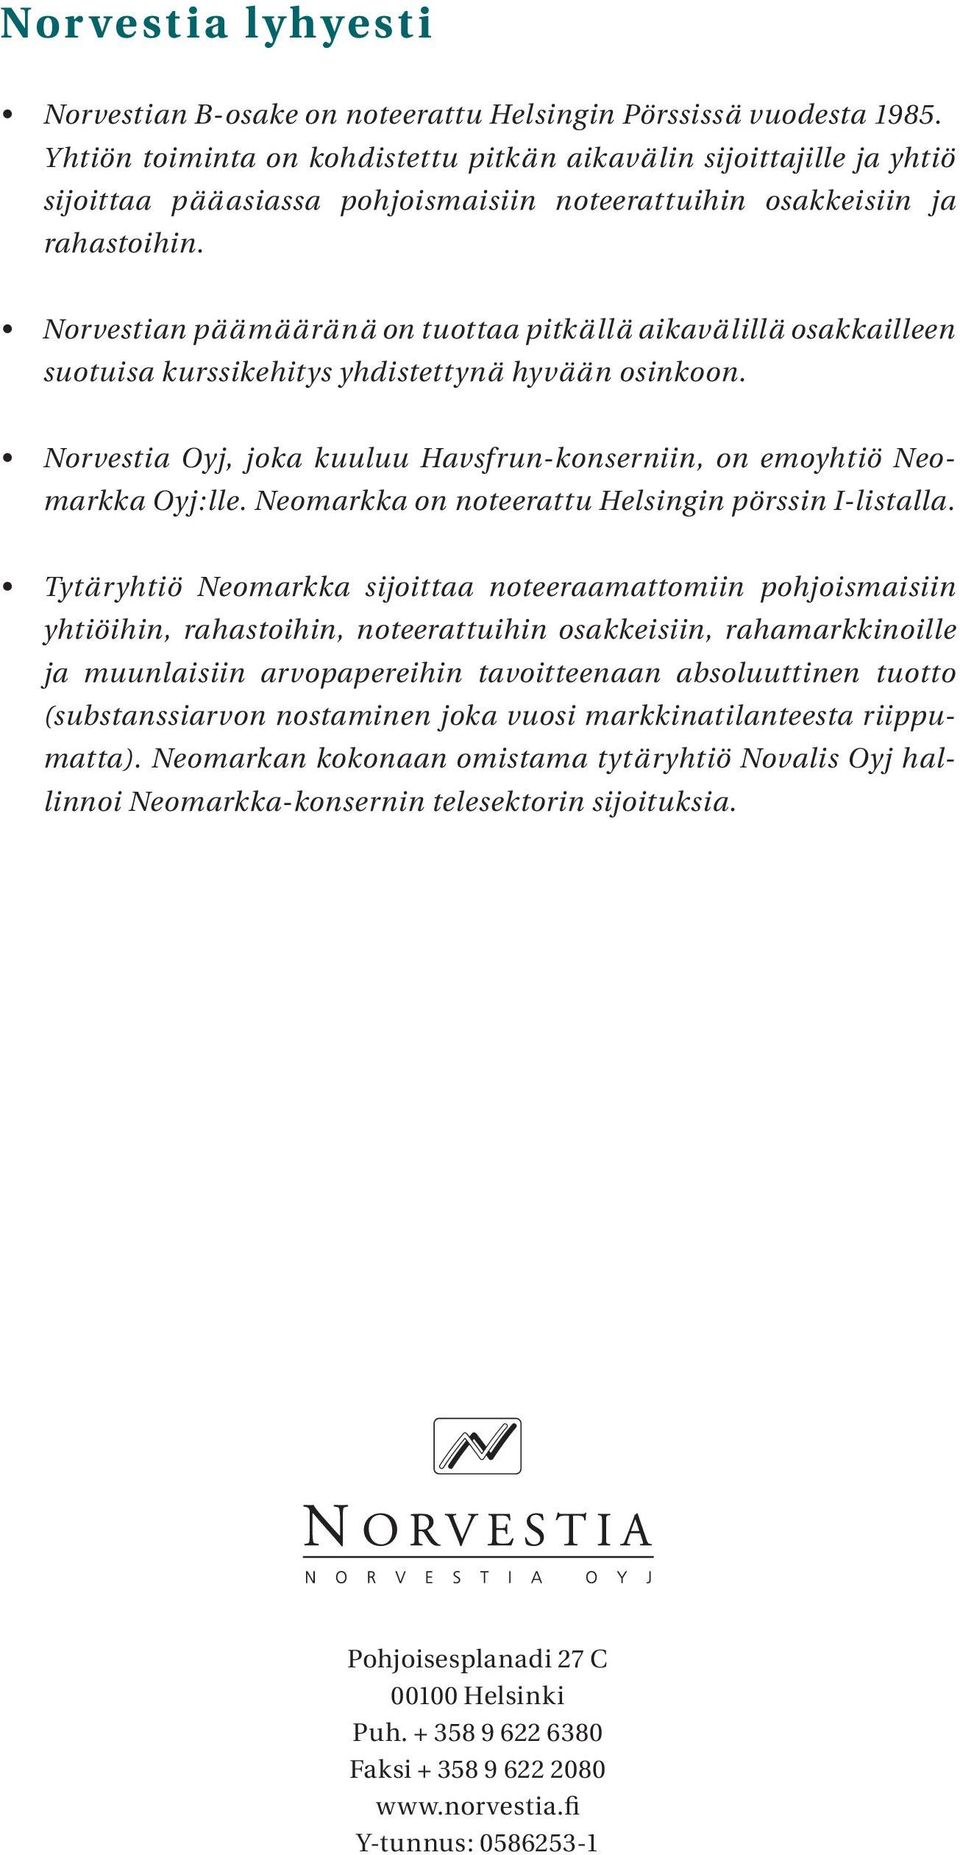 Norvestian päämääränä on tuottaa pitkällä aikavälillä osakkailleen suotuisa kurssikehitys yhdistettynä hyvään osinkoon. Norvestia Oyj, joka kuuluu Havsfrun-konserniin, on emoyhtiö Neomarkka Oyj:lle.